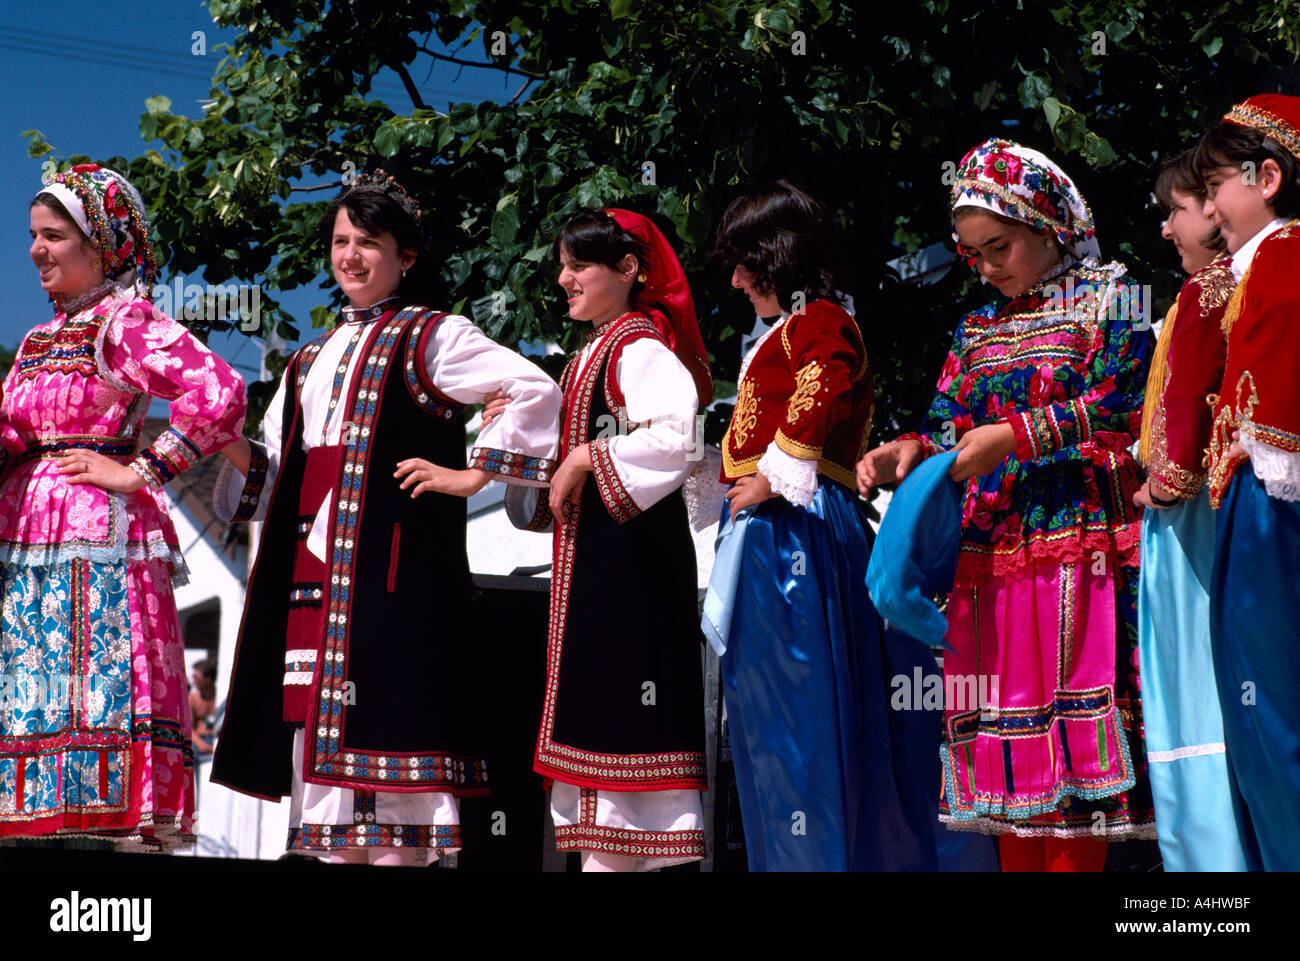 Las mujeres griegas en Traje Típico realizar una danza tradicional griega  en la ciudad de Vancouver, British Columbia, Canadá Fotografía de stock -  Alamy